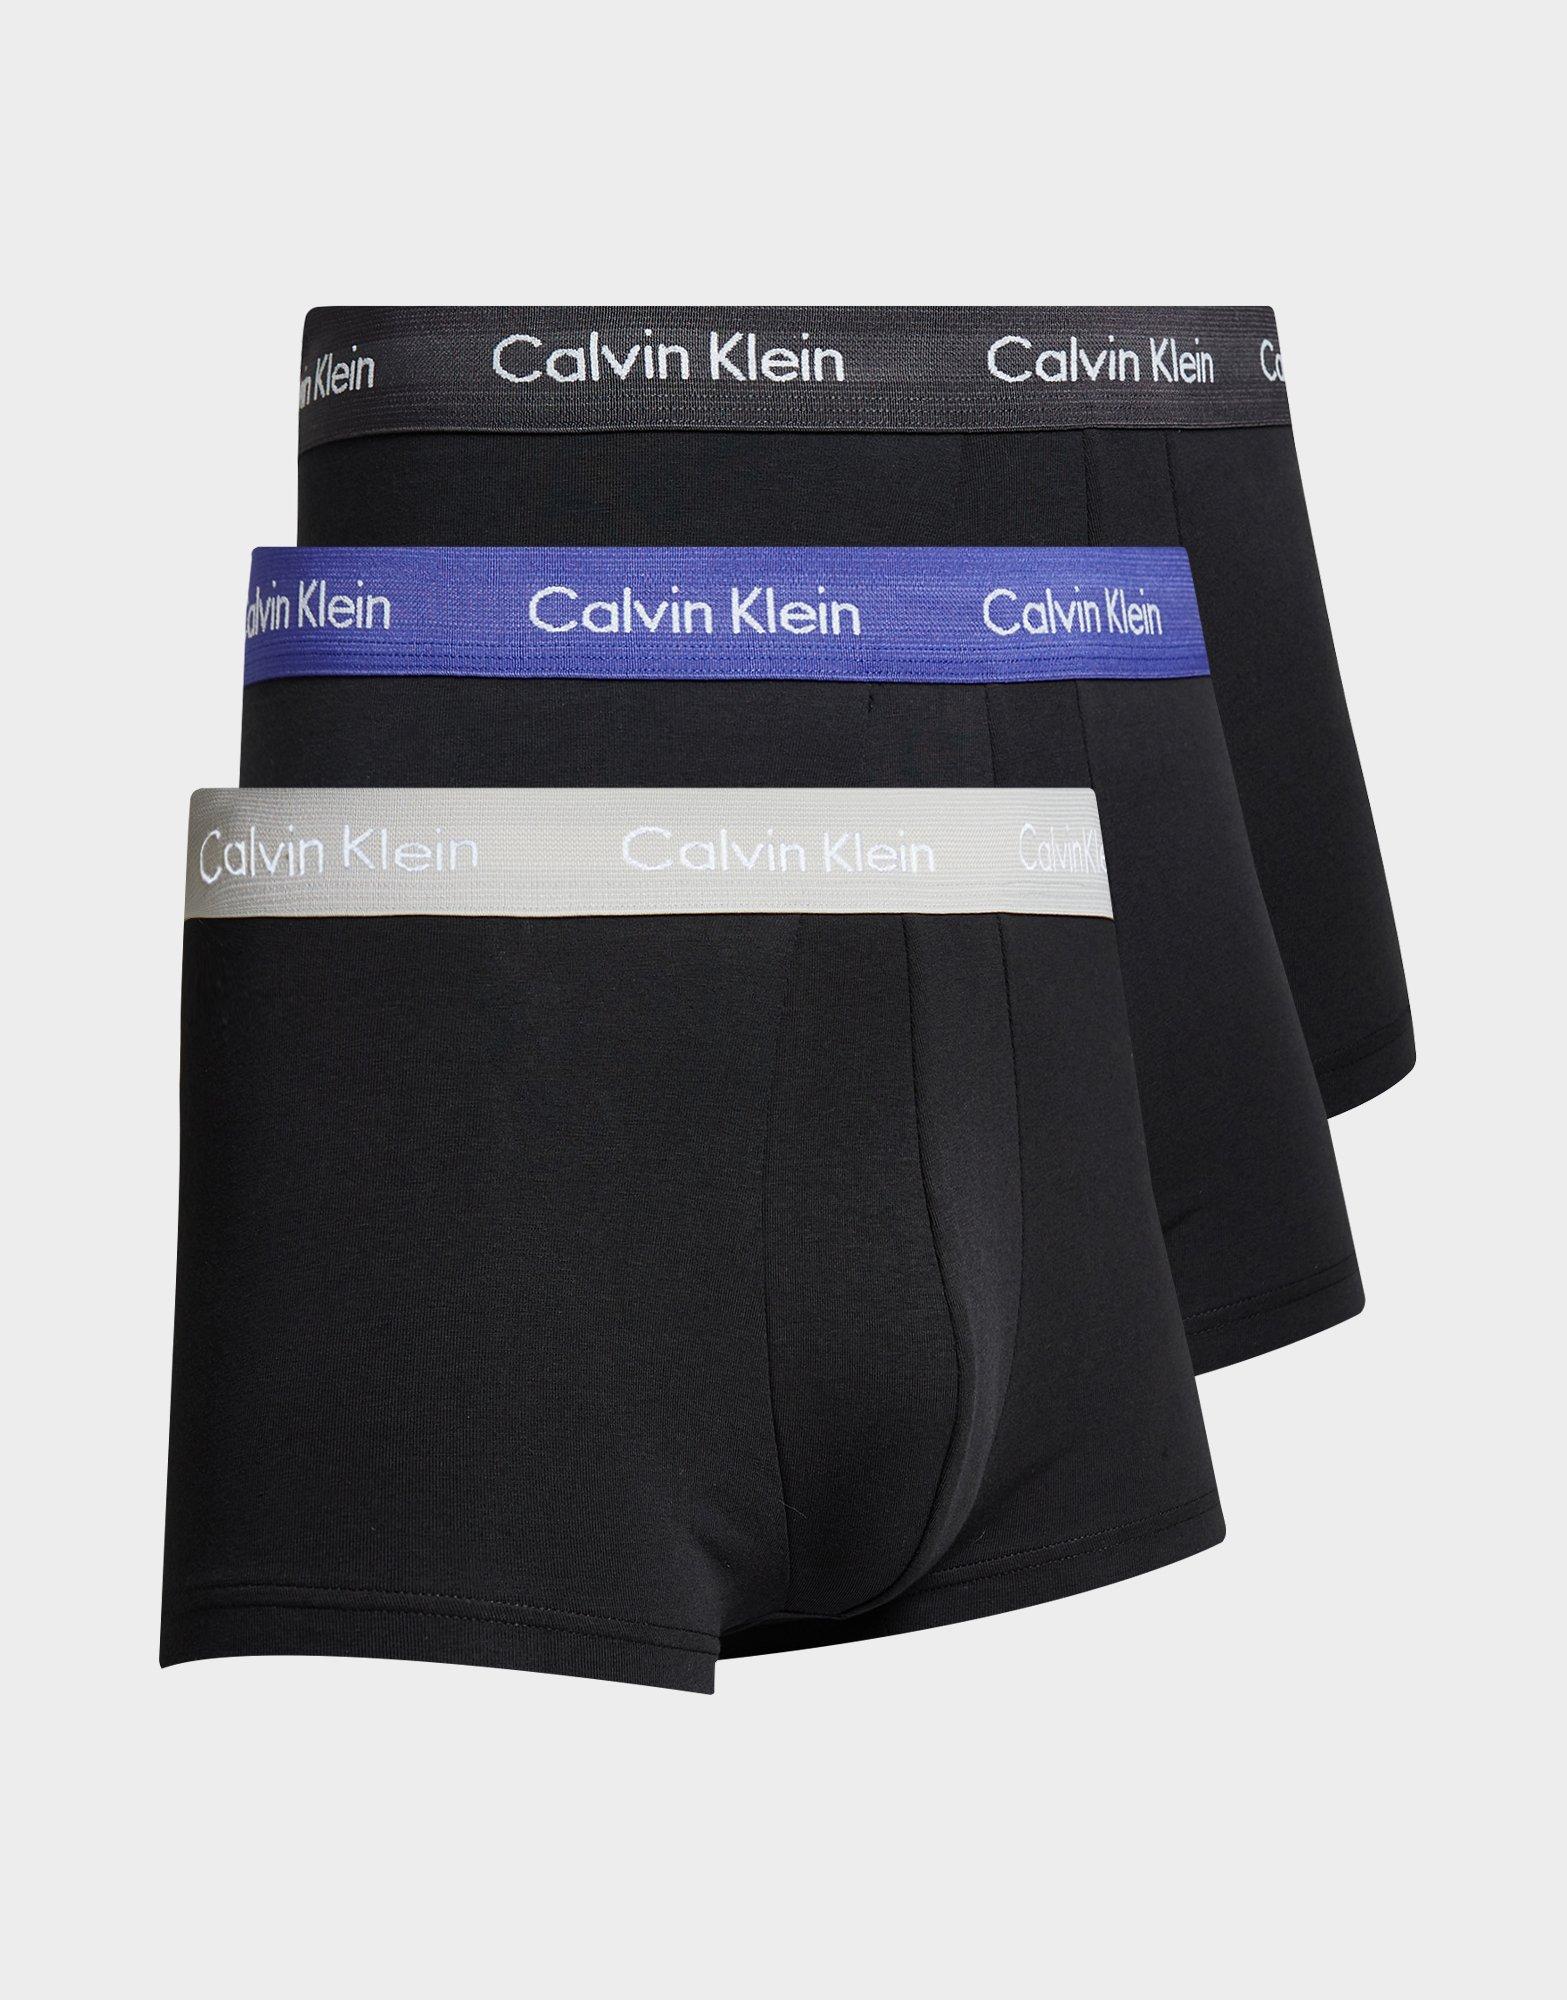 Women - Calvin Klein Underwear Socks & Underwear - JD Sports Ireland